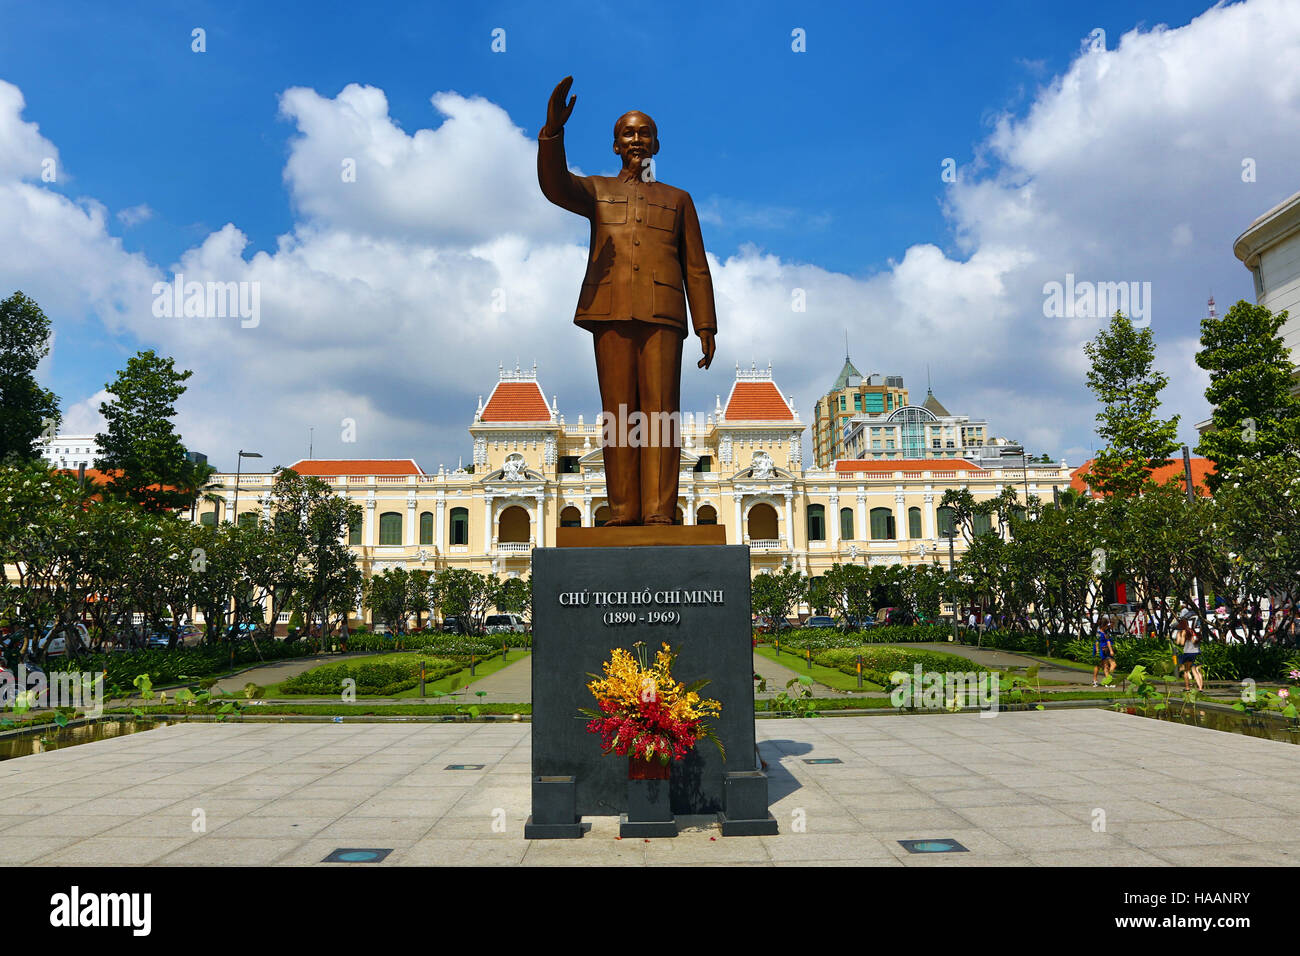 Statua di Ho Chi Minh davanti al popolo di Saigon Comitato dell'edificio, città di Ho Chi Minh (Saigon), Vietnam Foto Stock